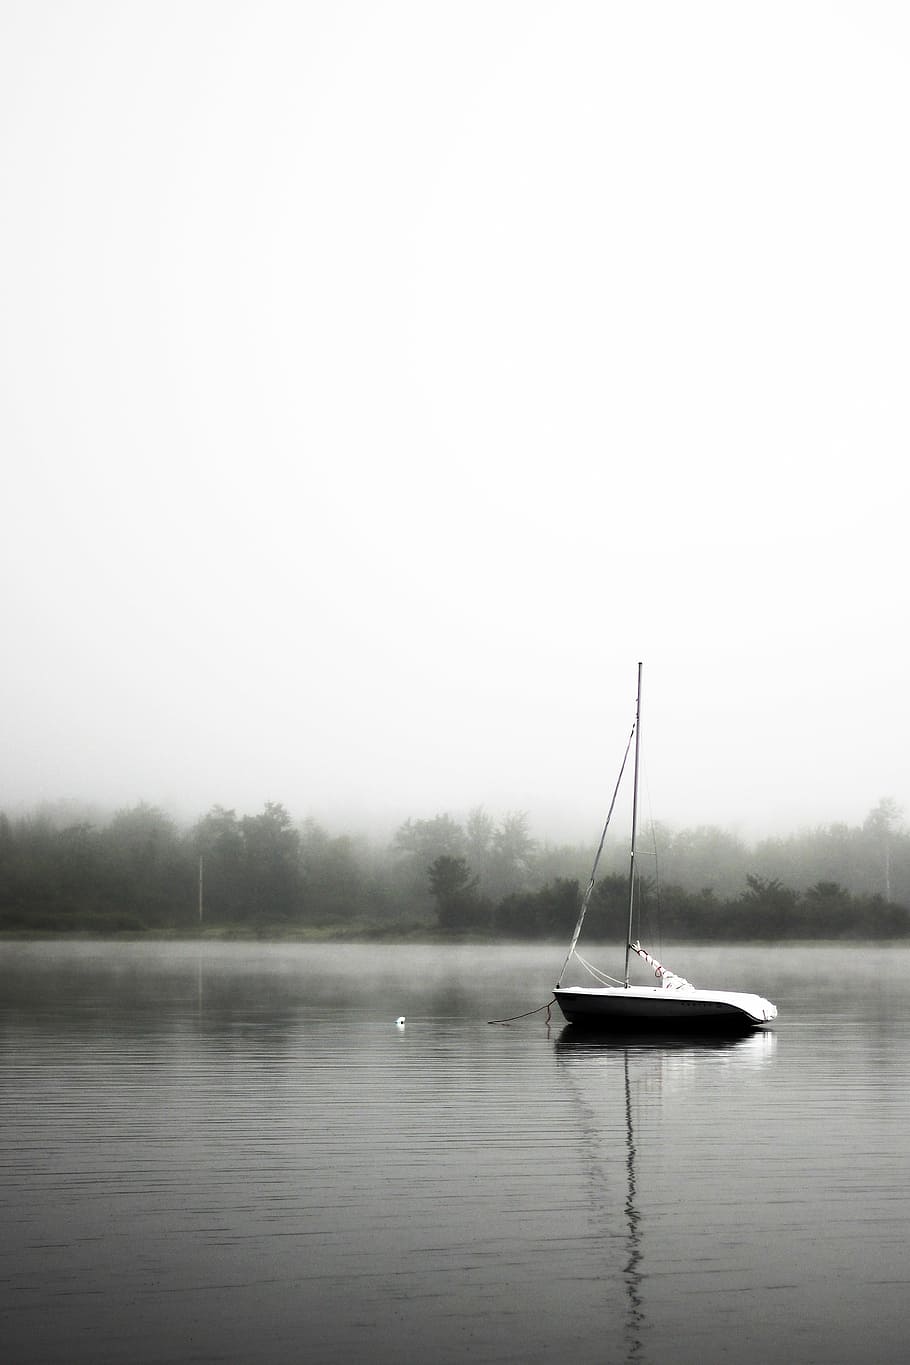 ボート, 体, 水, 湖, セーリング, 霧, 黒と白, 木, 屋外, 自然